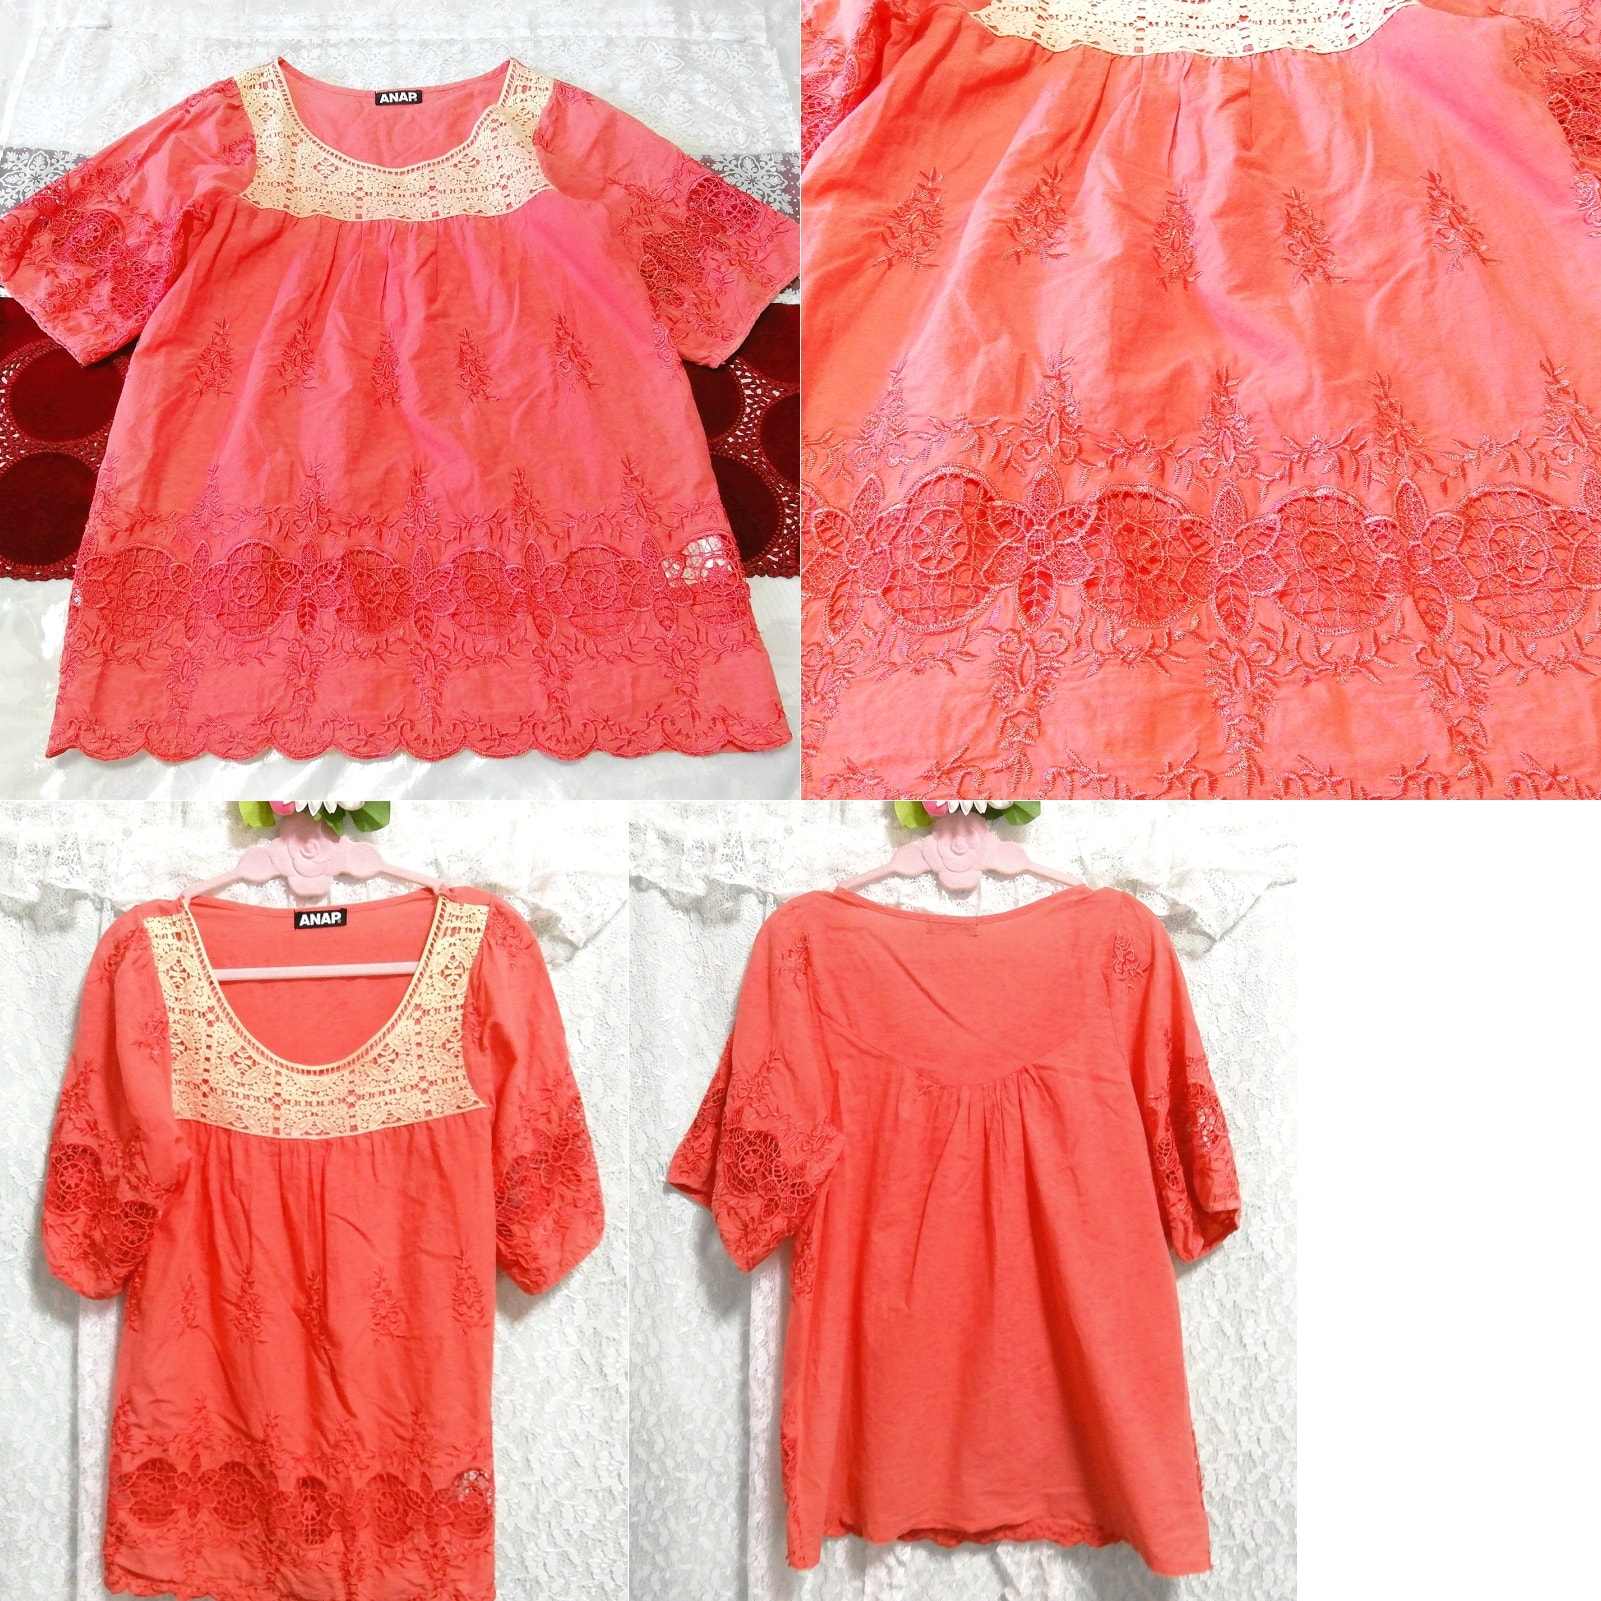 레드 핑크 아마 레이스 코튼 코튼 레이스 반소매 튜닉 네글리제 잠옷 드레스, 튜닉, 짧은 소매, m 사이즈